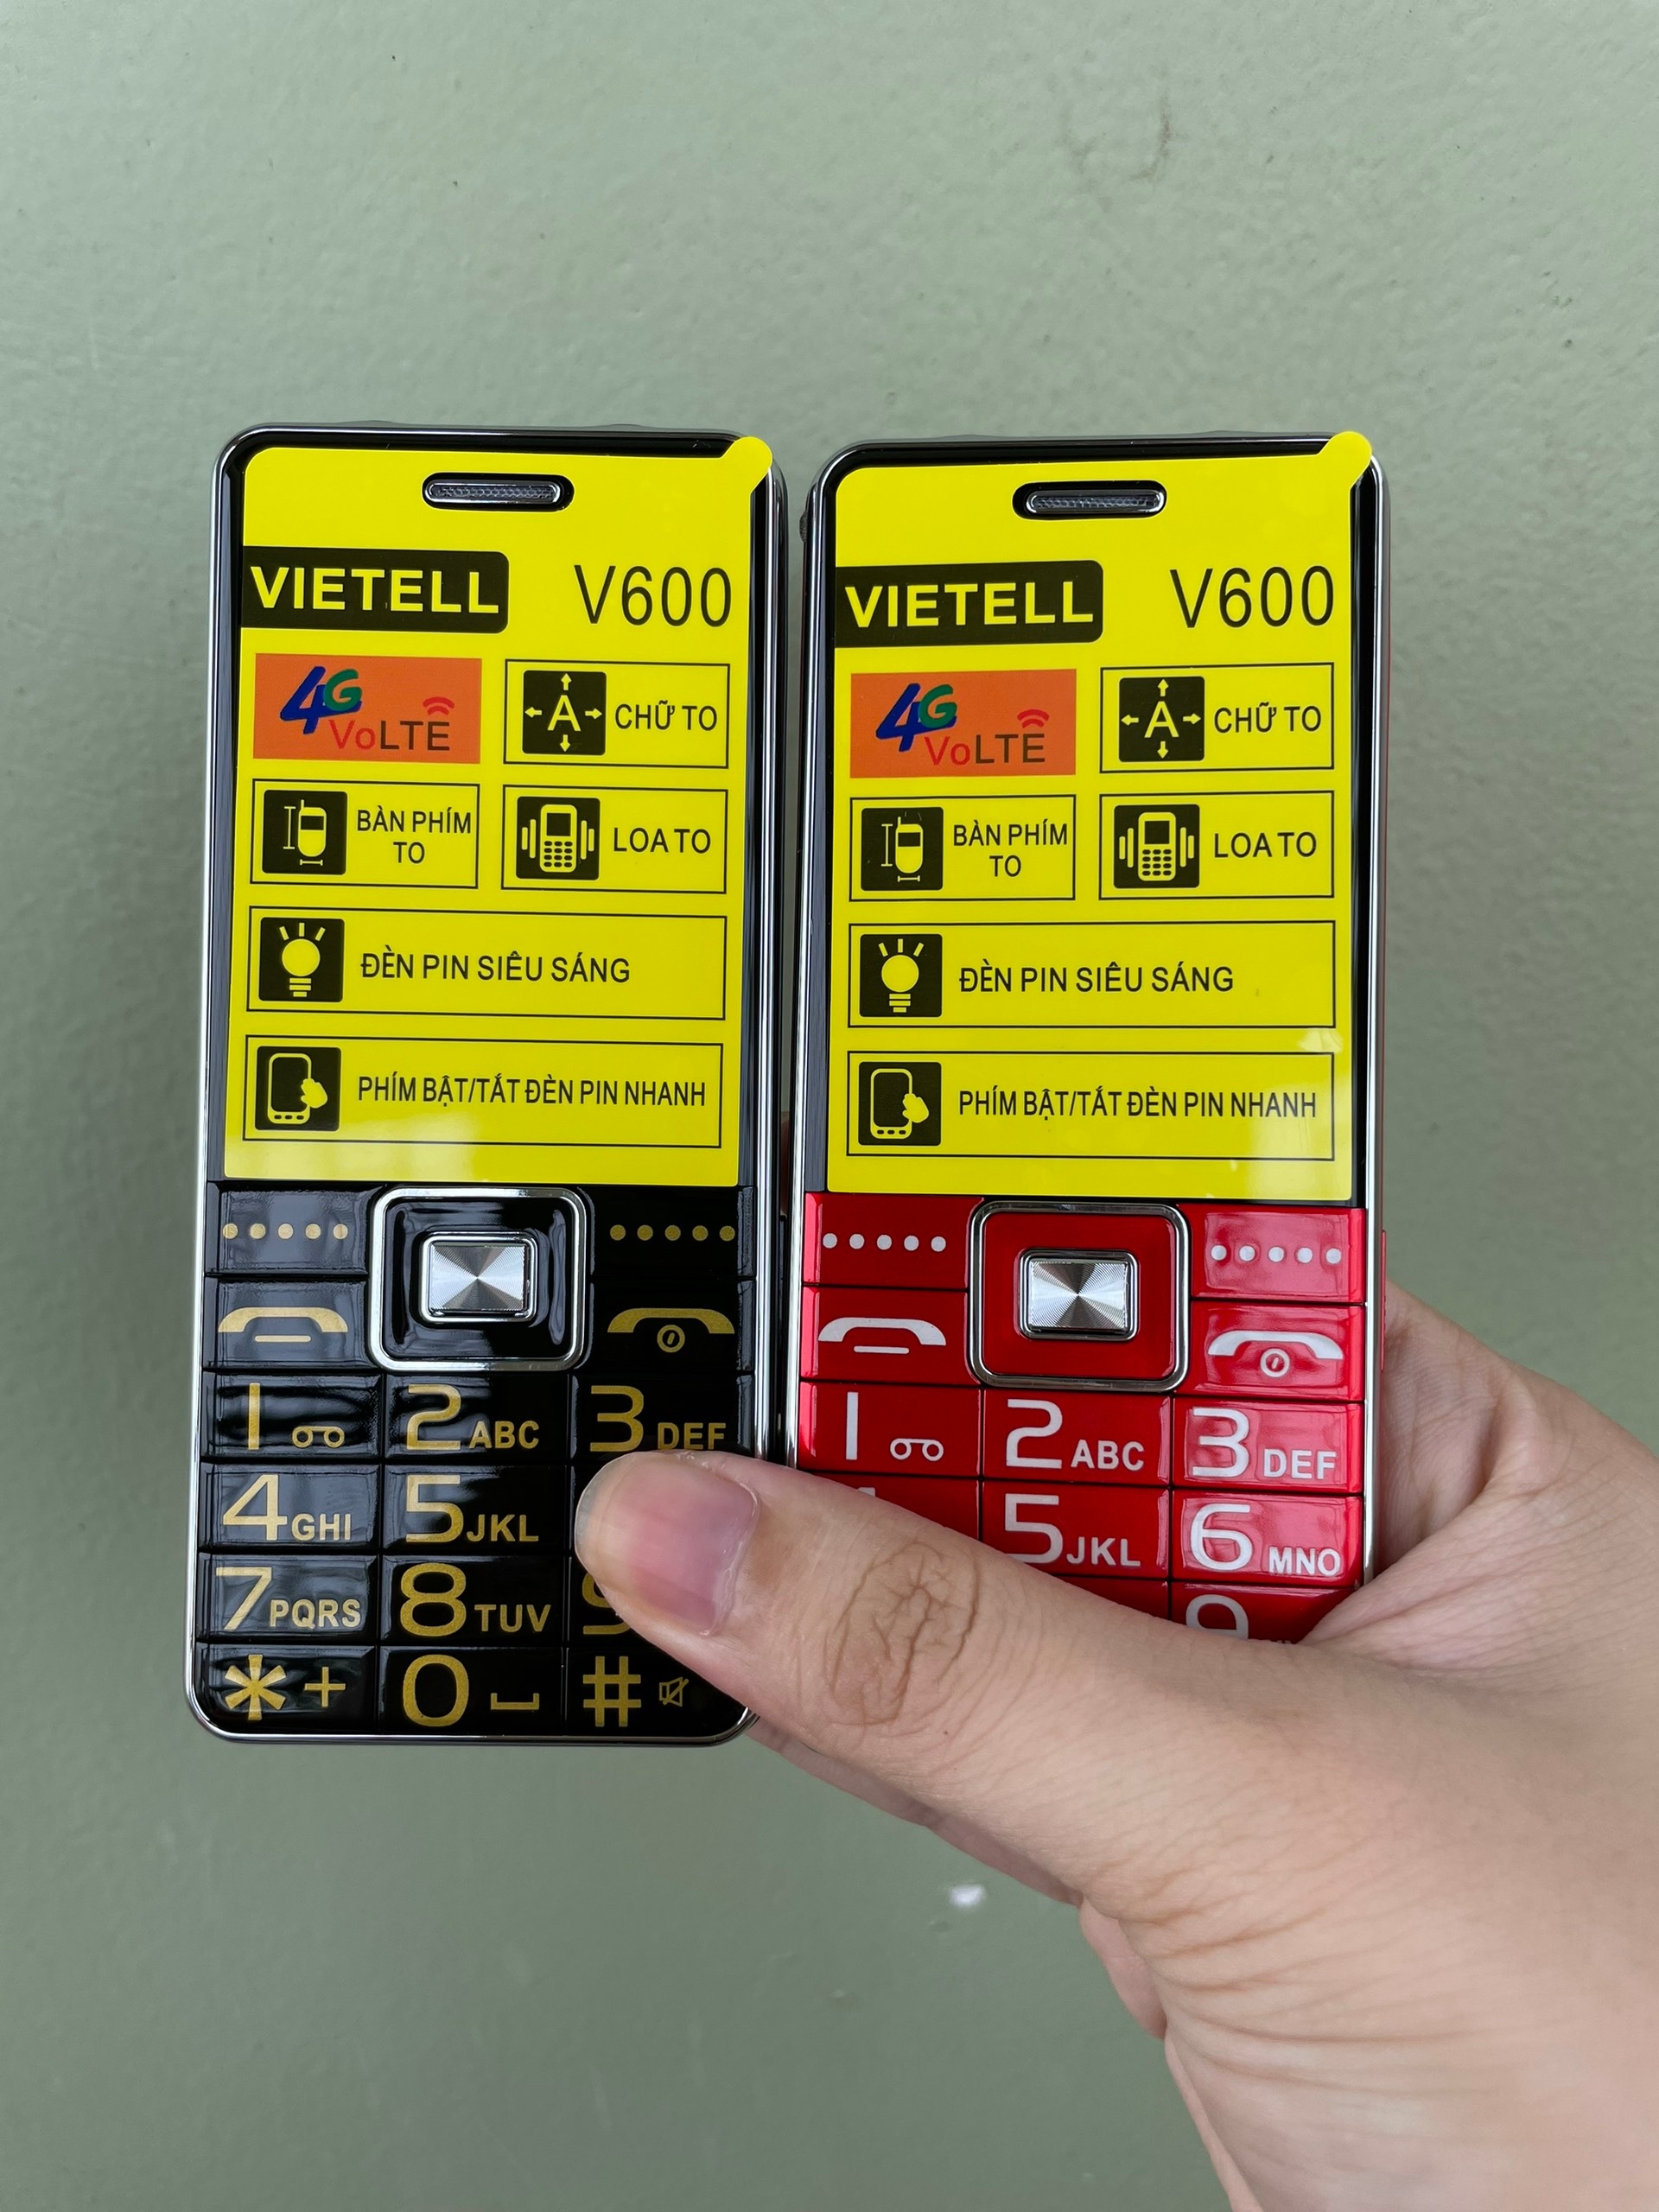 Điện thoại người già VIETELL V600 4G - bàn phím to, loa to, chữ to, đèn pin siêu sáng, pin khủng - Mới full box